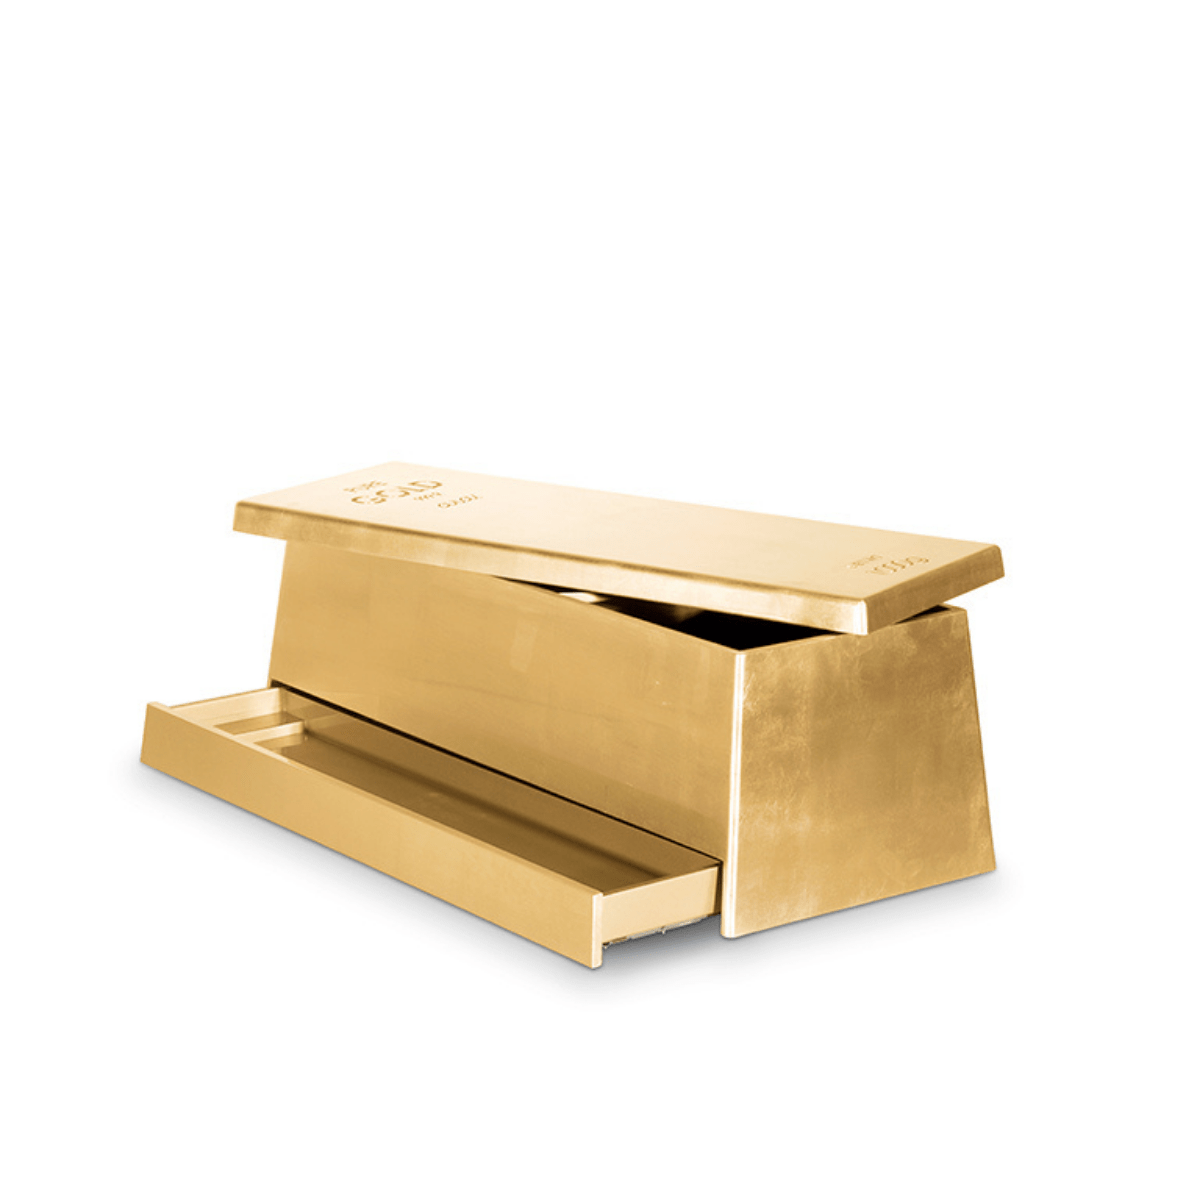 gold box circu magical furniture 1 Lapiaz Cabinet